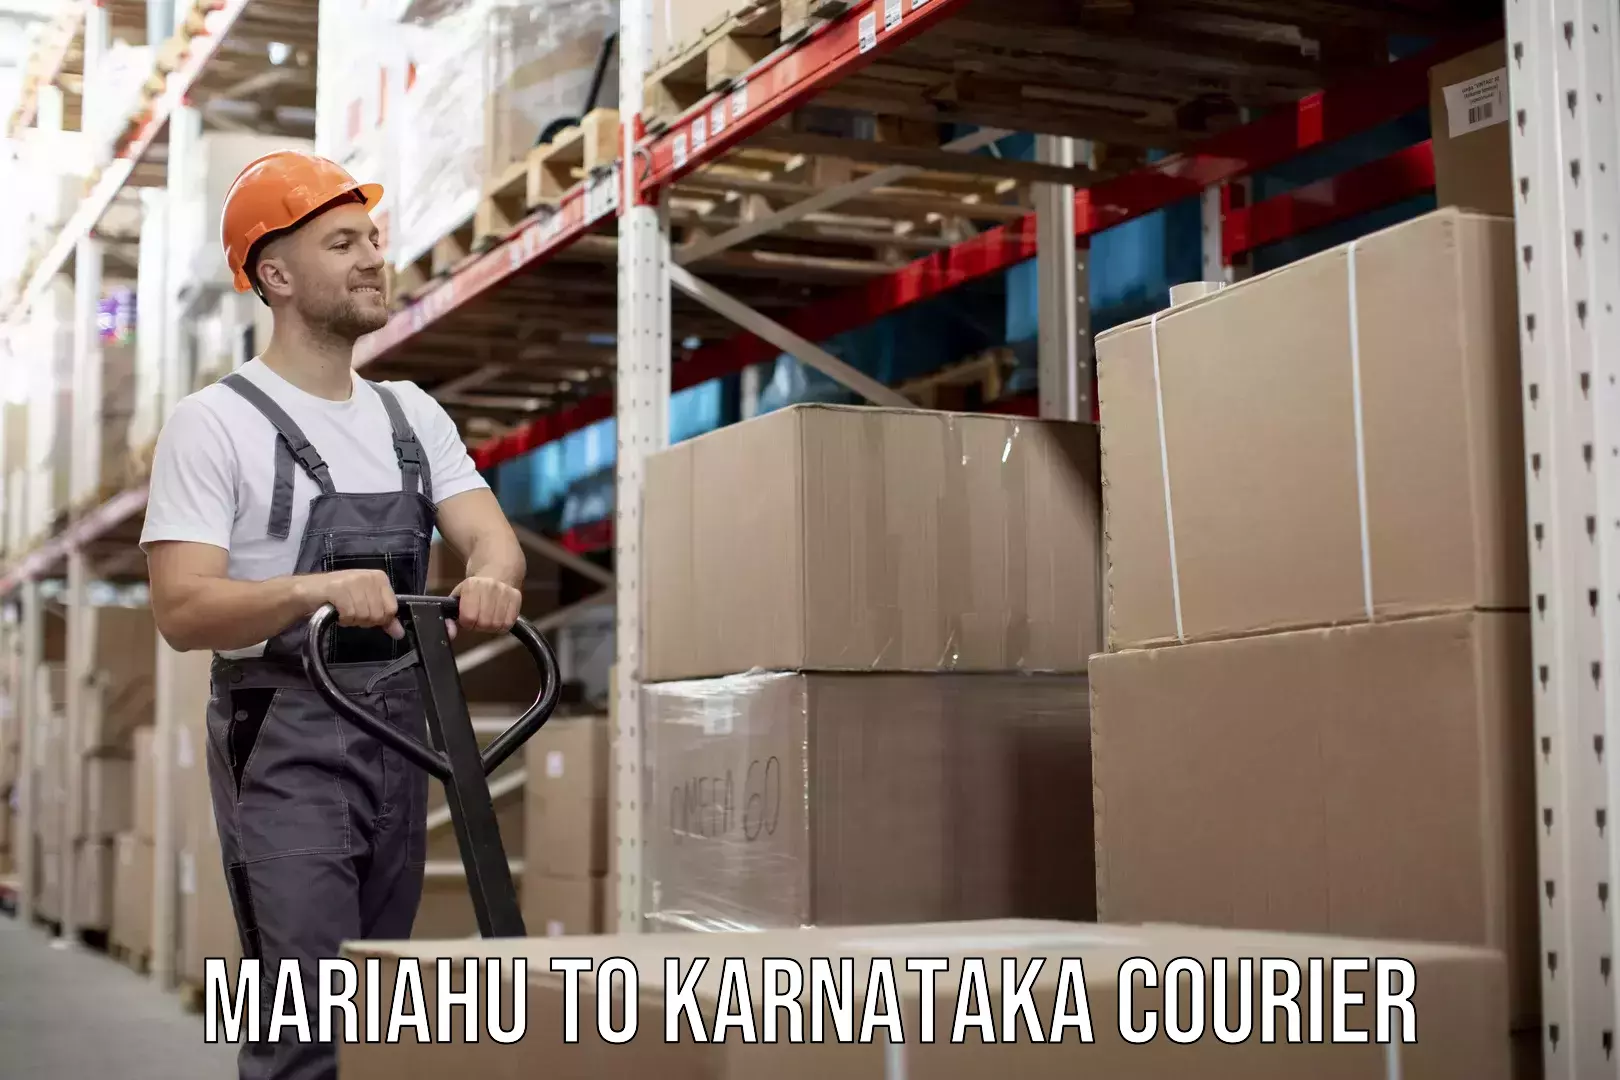 Furniture moving experts Mariahu to Karnataka